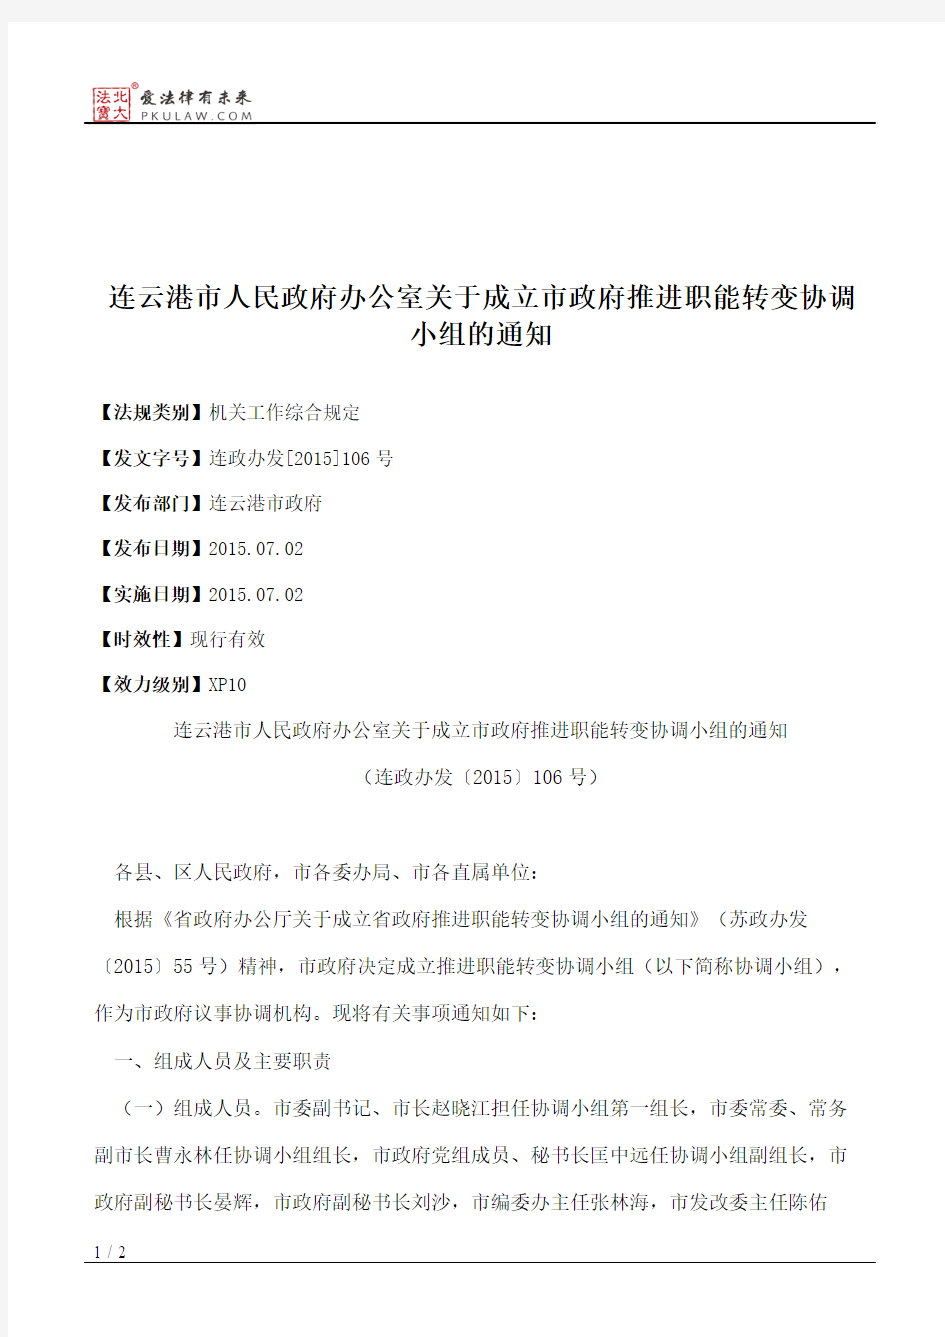 连云港市人民政府办公室关于成立市政府推进职能转变协调小组的通知